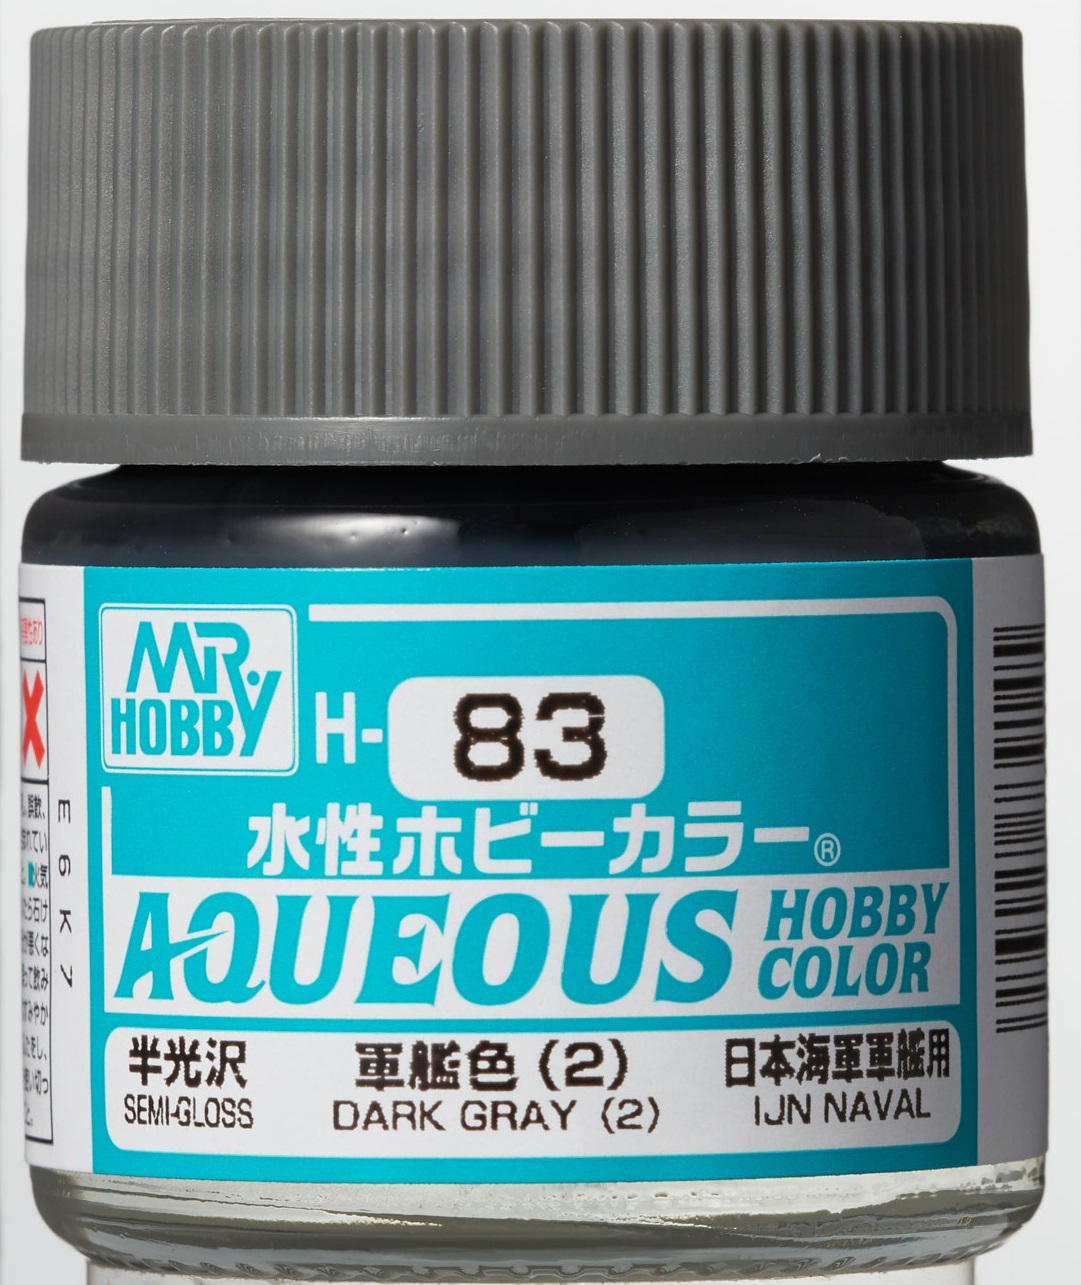 Mr. Aqueous Hobby Color - Dark Grey (2) - H83 - Dunkelgrau (2)